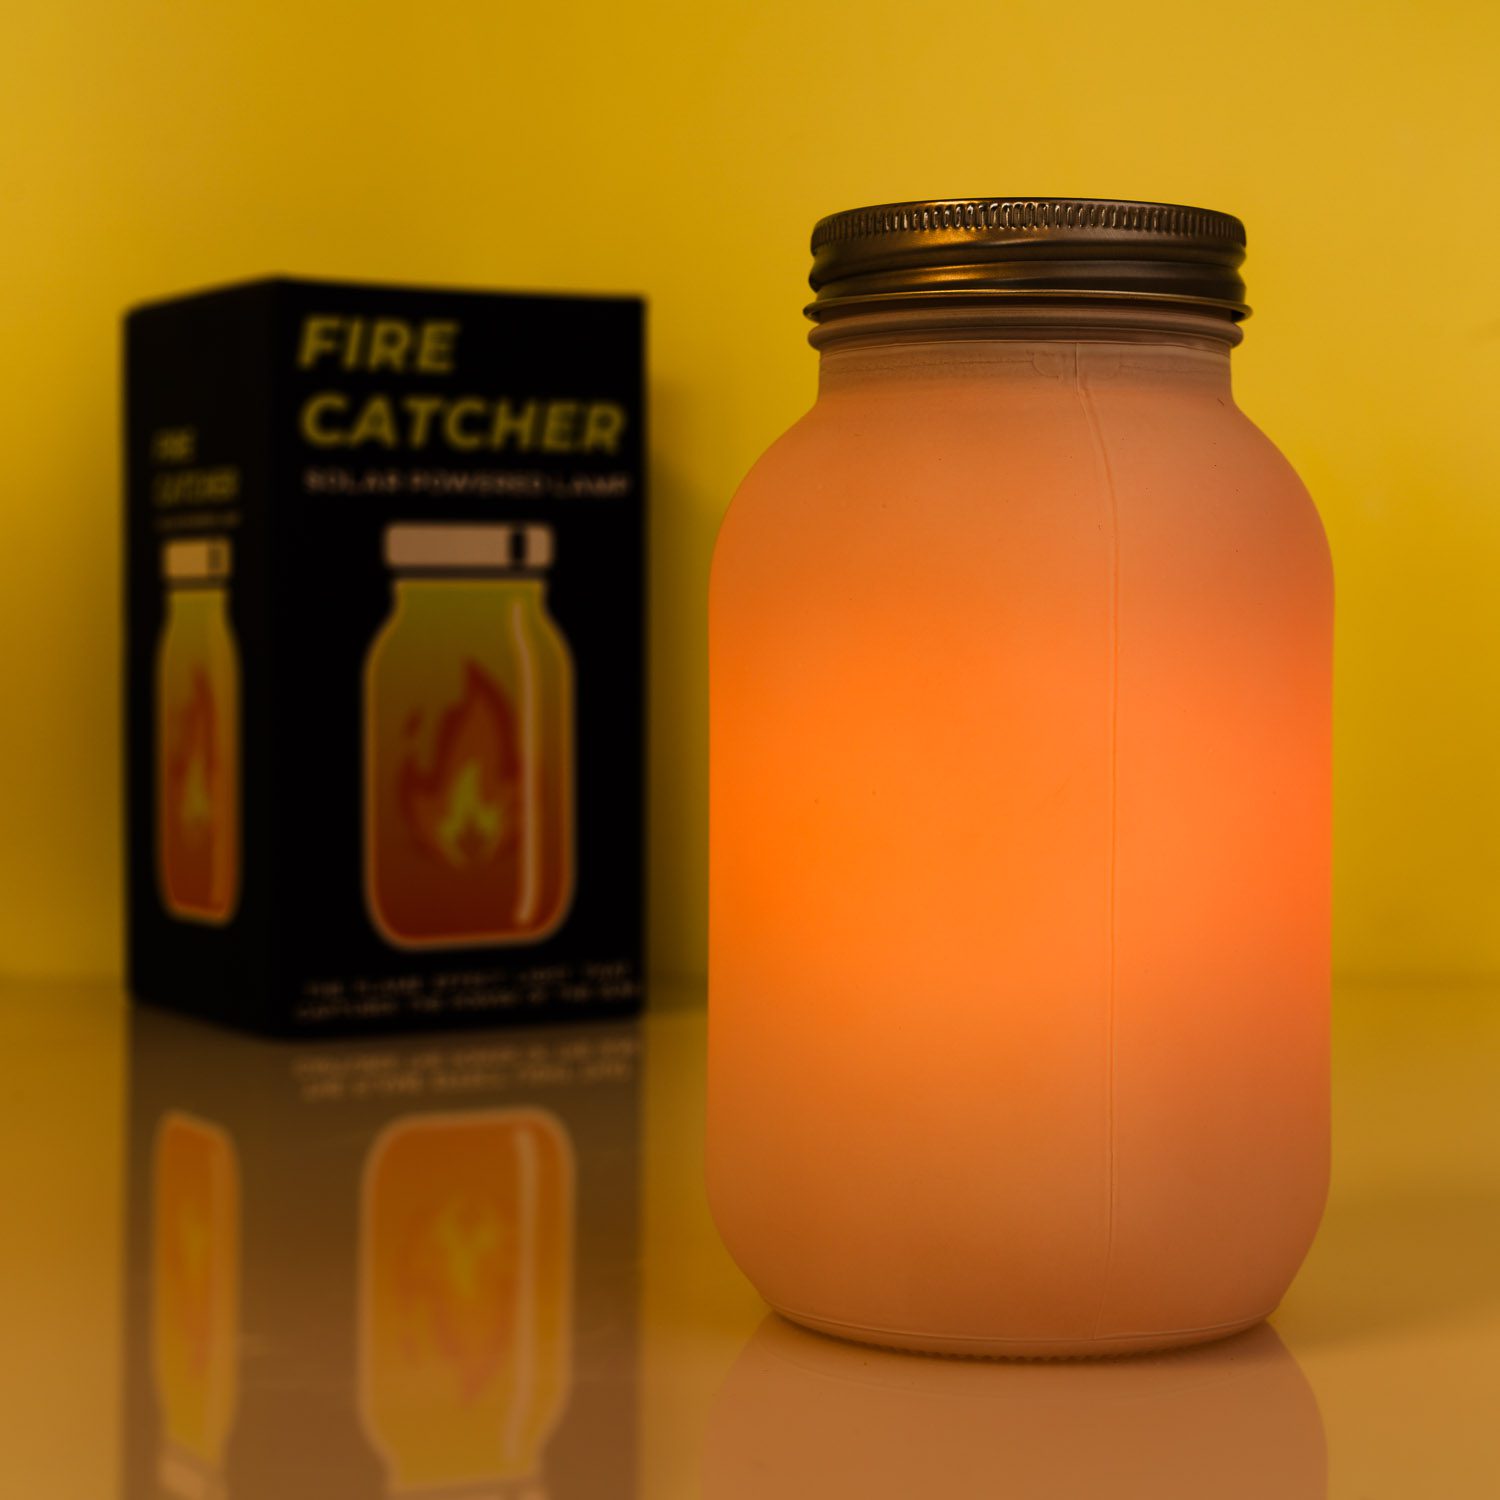 Fire Catcher Solar Jar